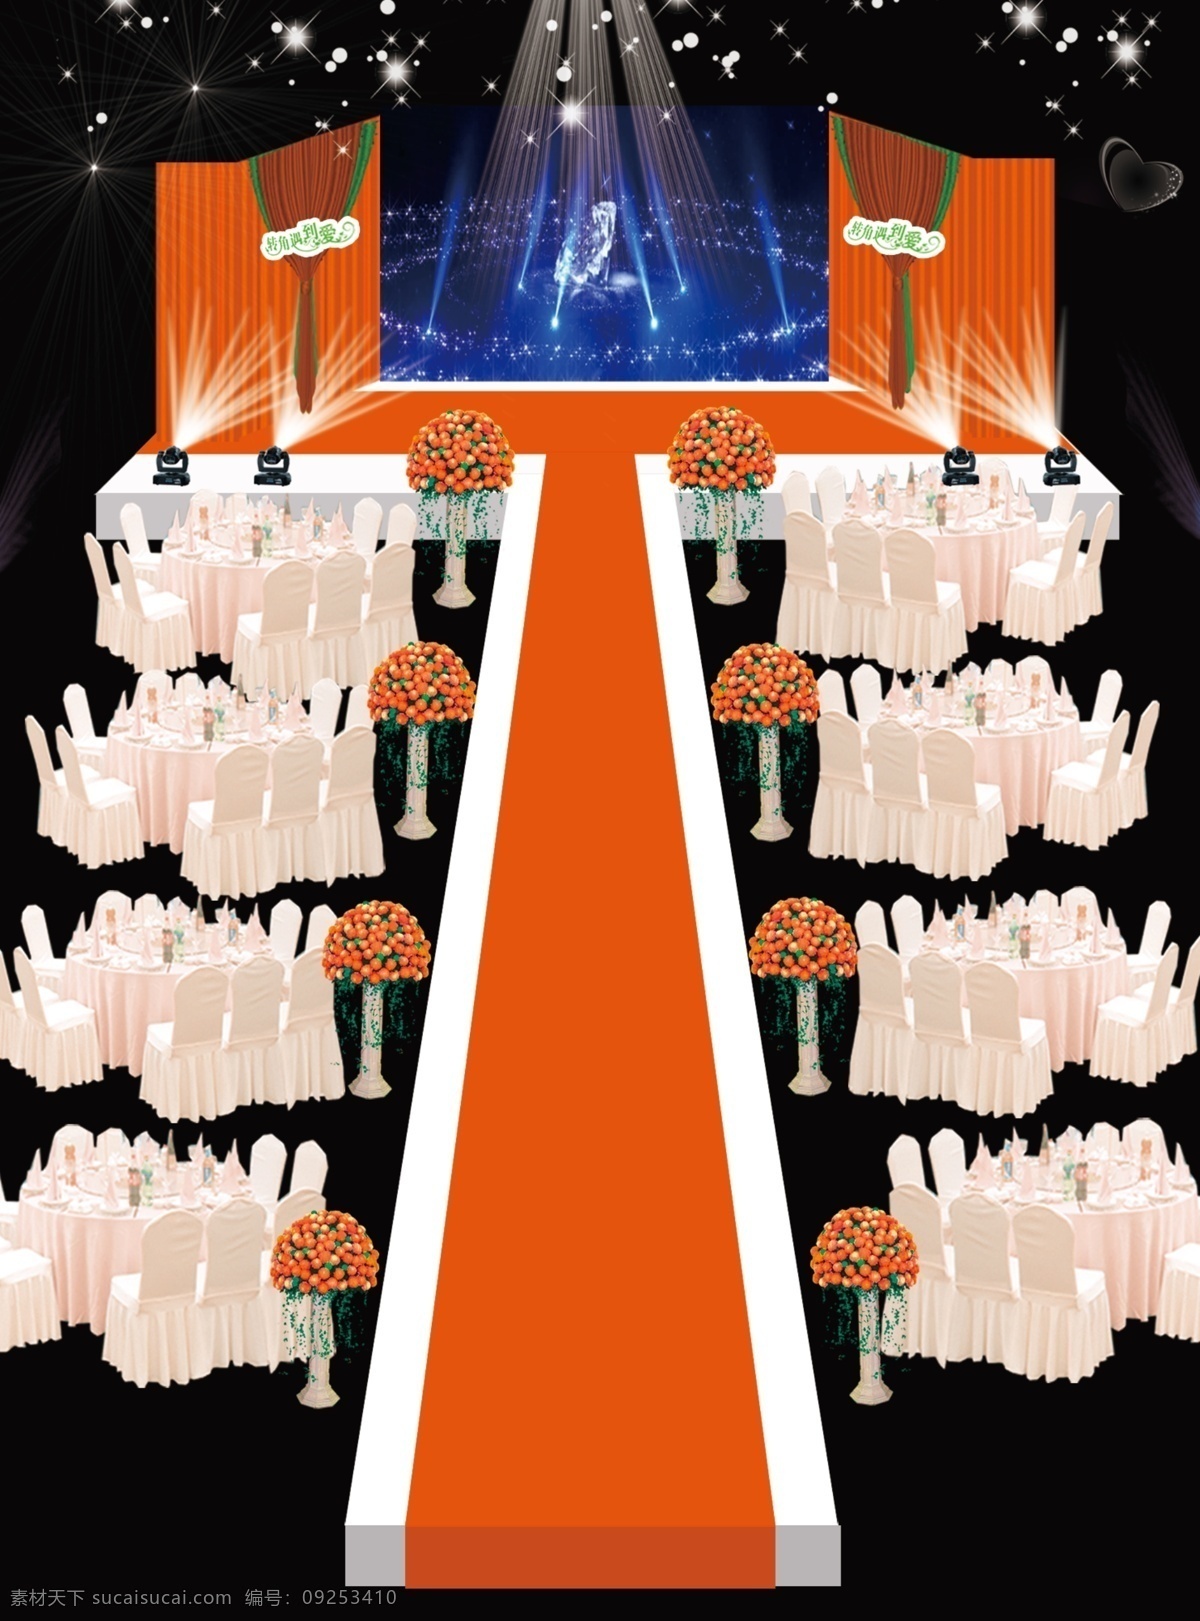 橙色 婚礼 舞台 背景 效果图 黑色